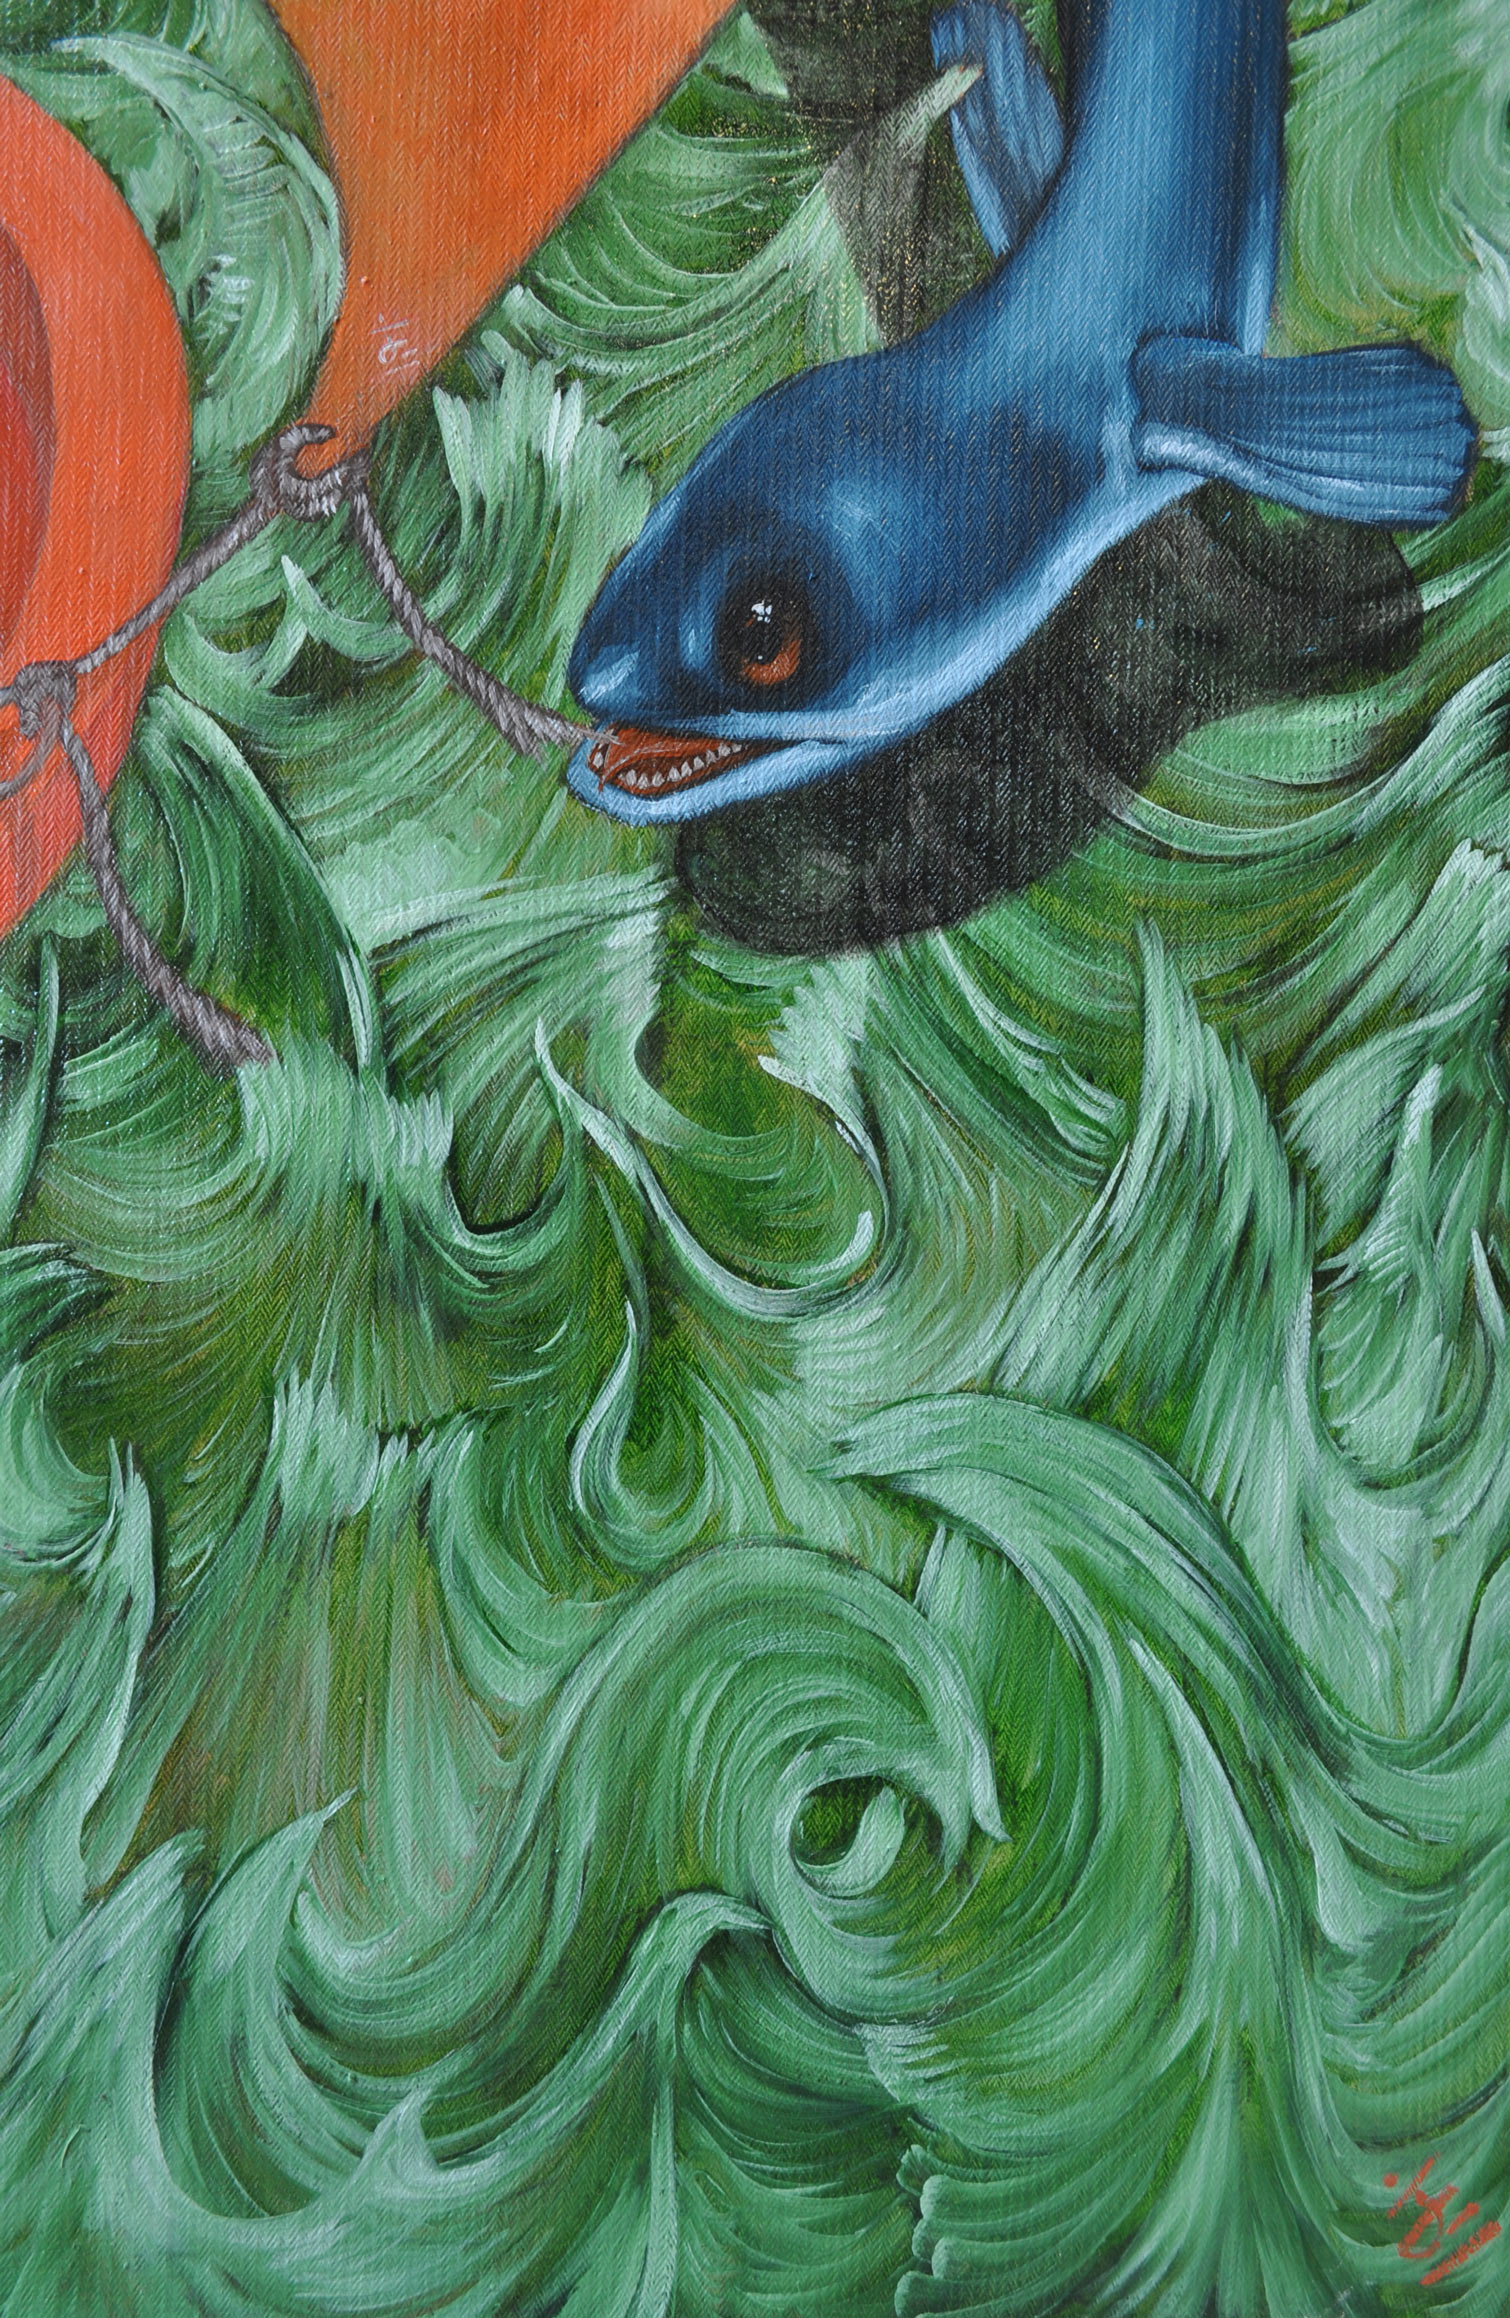 Détail de l'anguille et des vagues, en bas à gauche du tableau. On s'aperçoit que la peintresse a signé sa peinture sur la voile, de la même signature que celle du peintre du tableau.